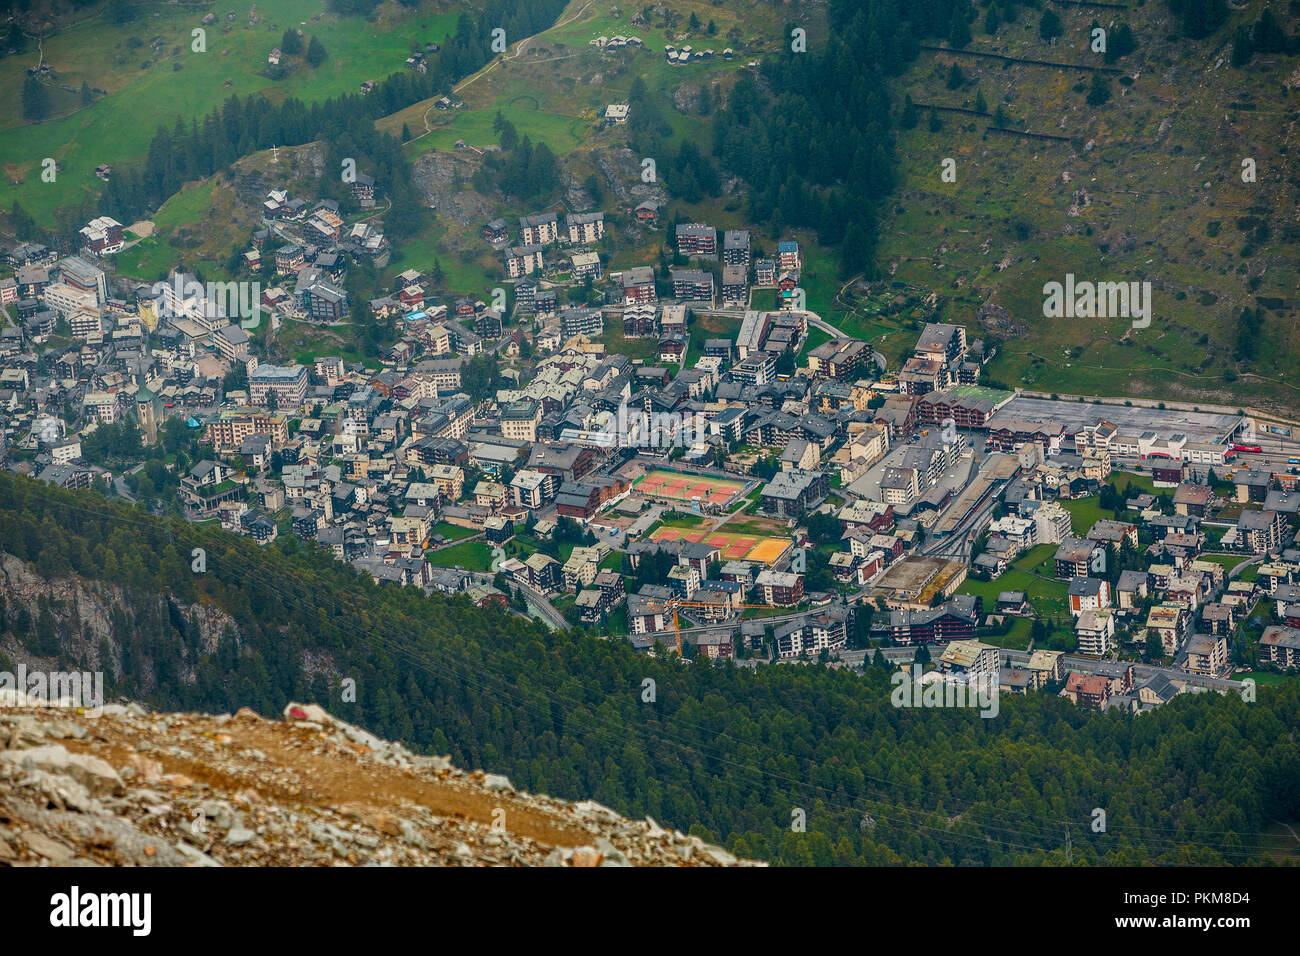 View of Zermatt. Swiss Alps. Valais. Switzerland. Europe. Stock Photo